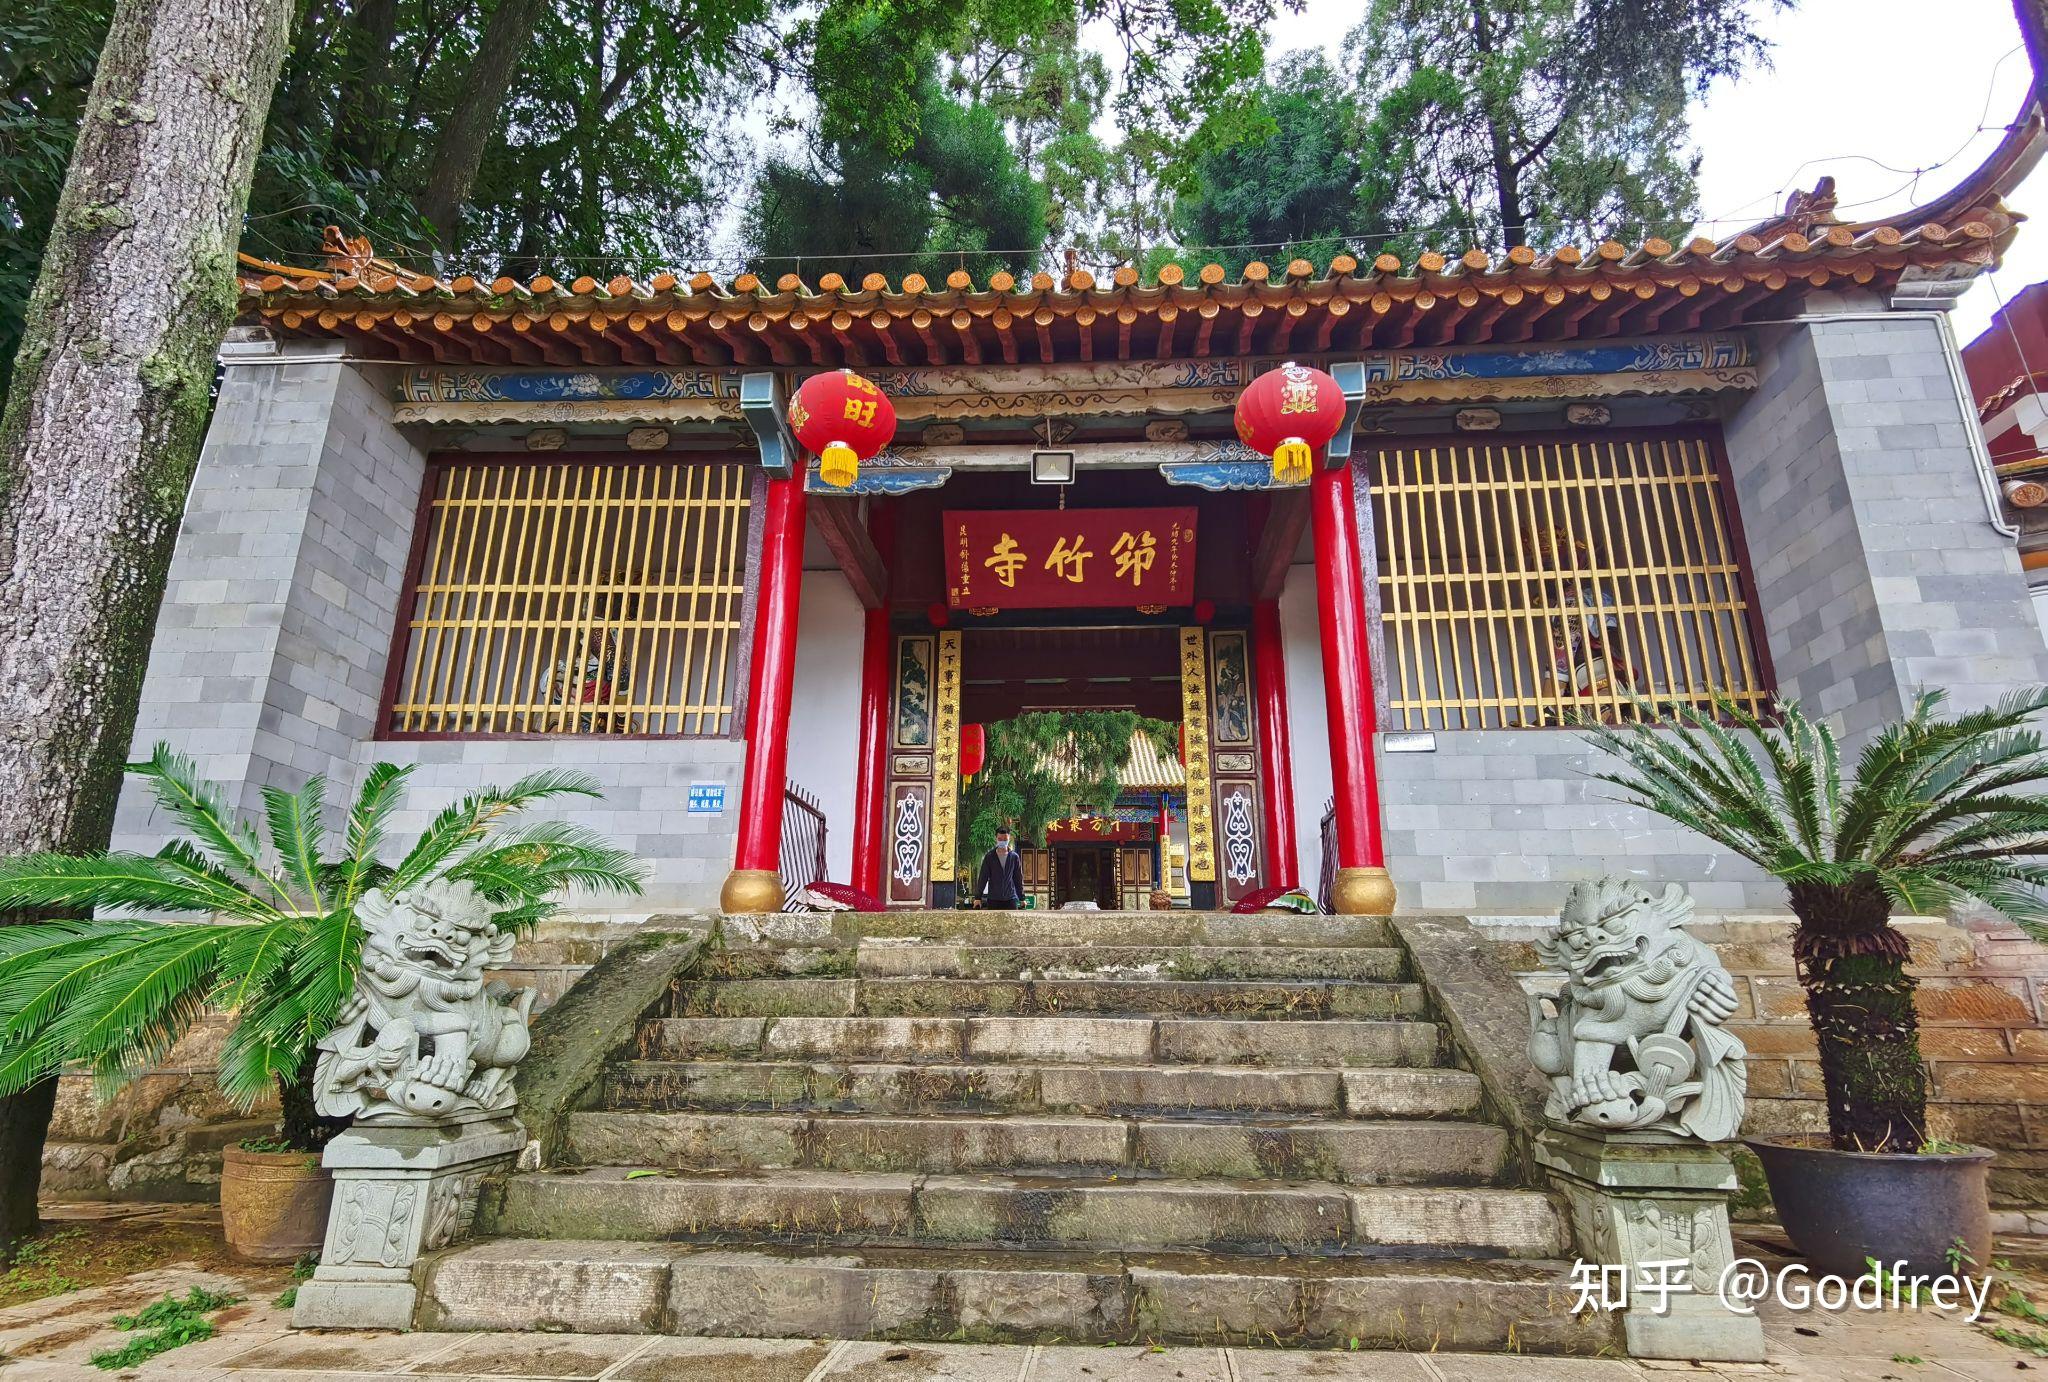 昆明筇竹寺五百罗汉被誉为东方雕塑艺术宝库中一颗璀璨的明珠其艺术